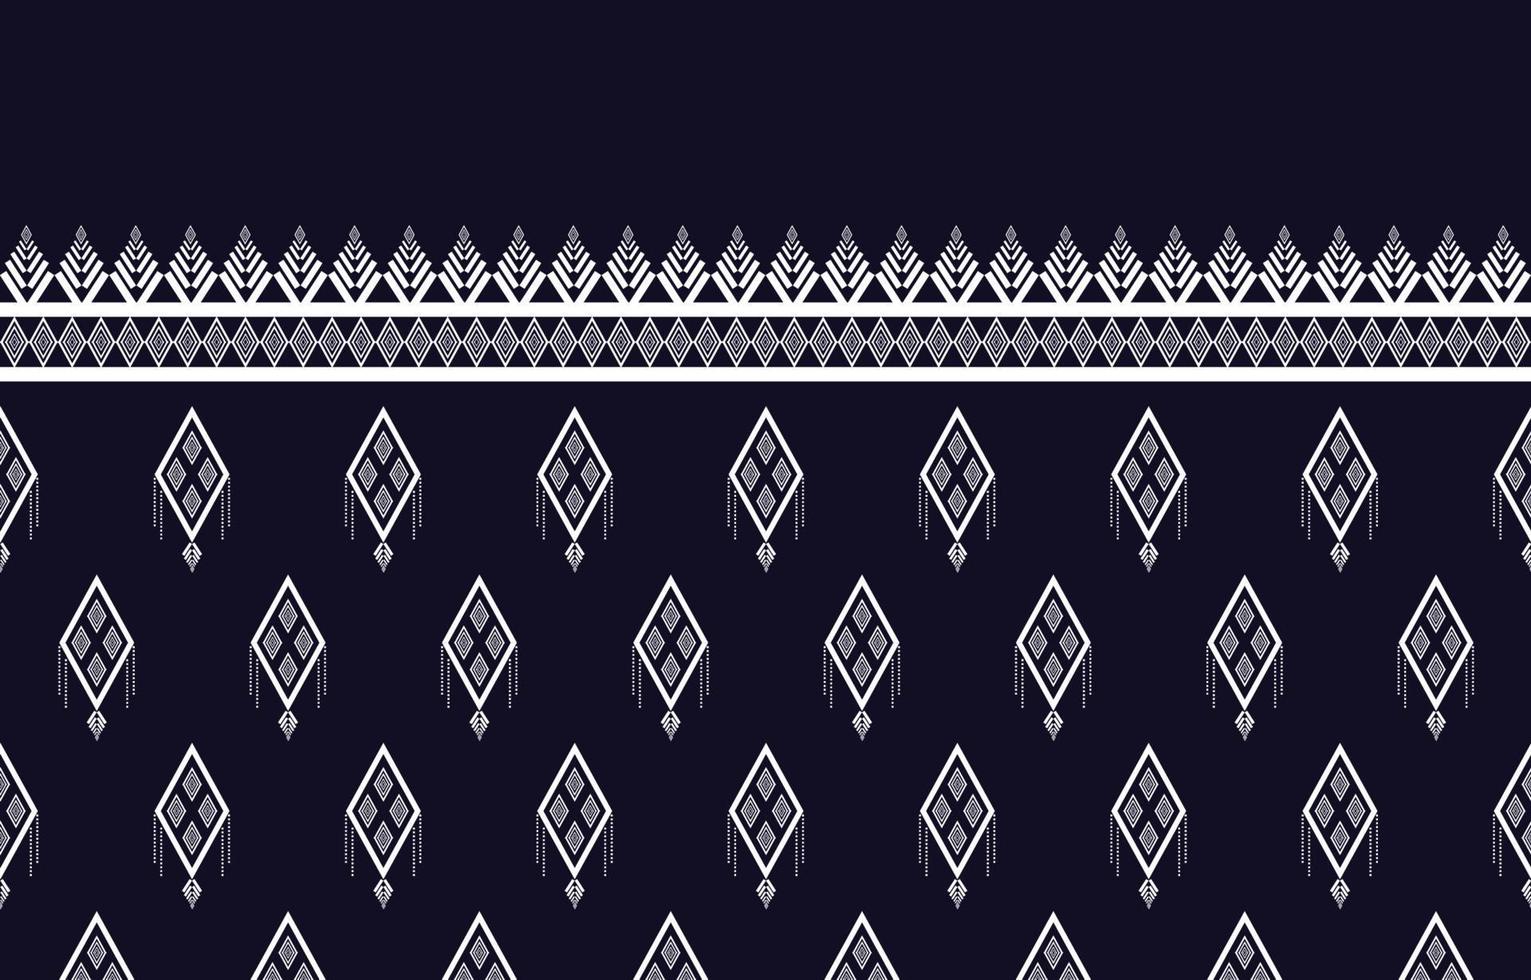 Patrones étnicos geométricos tribales tradicionales indígenas. Diseño de estilo de bordado para fondo, papel tapiz, alfombra, tela, abrigo, batik, ilustración vectorial vector